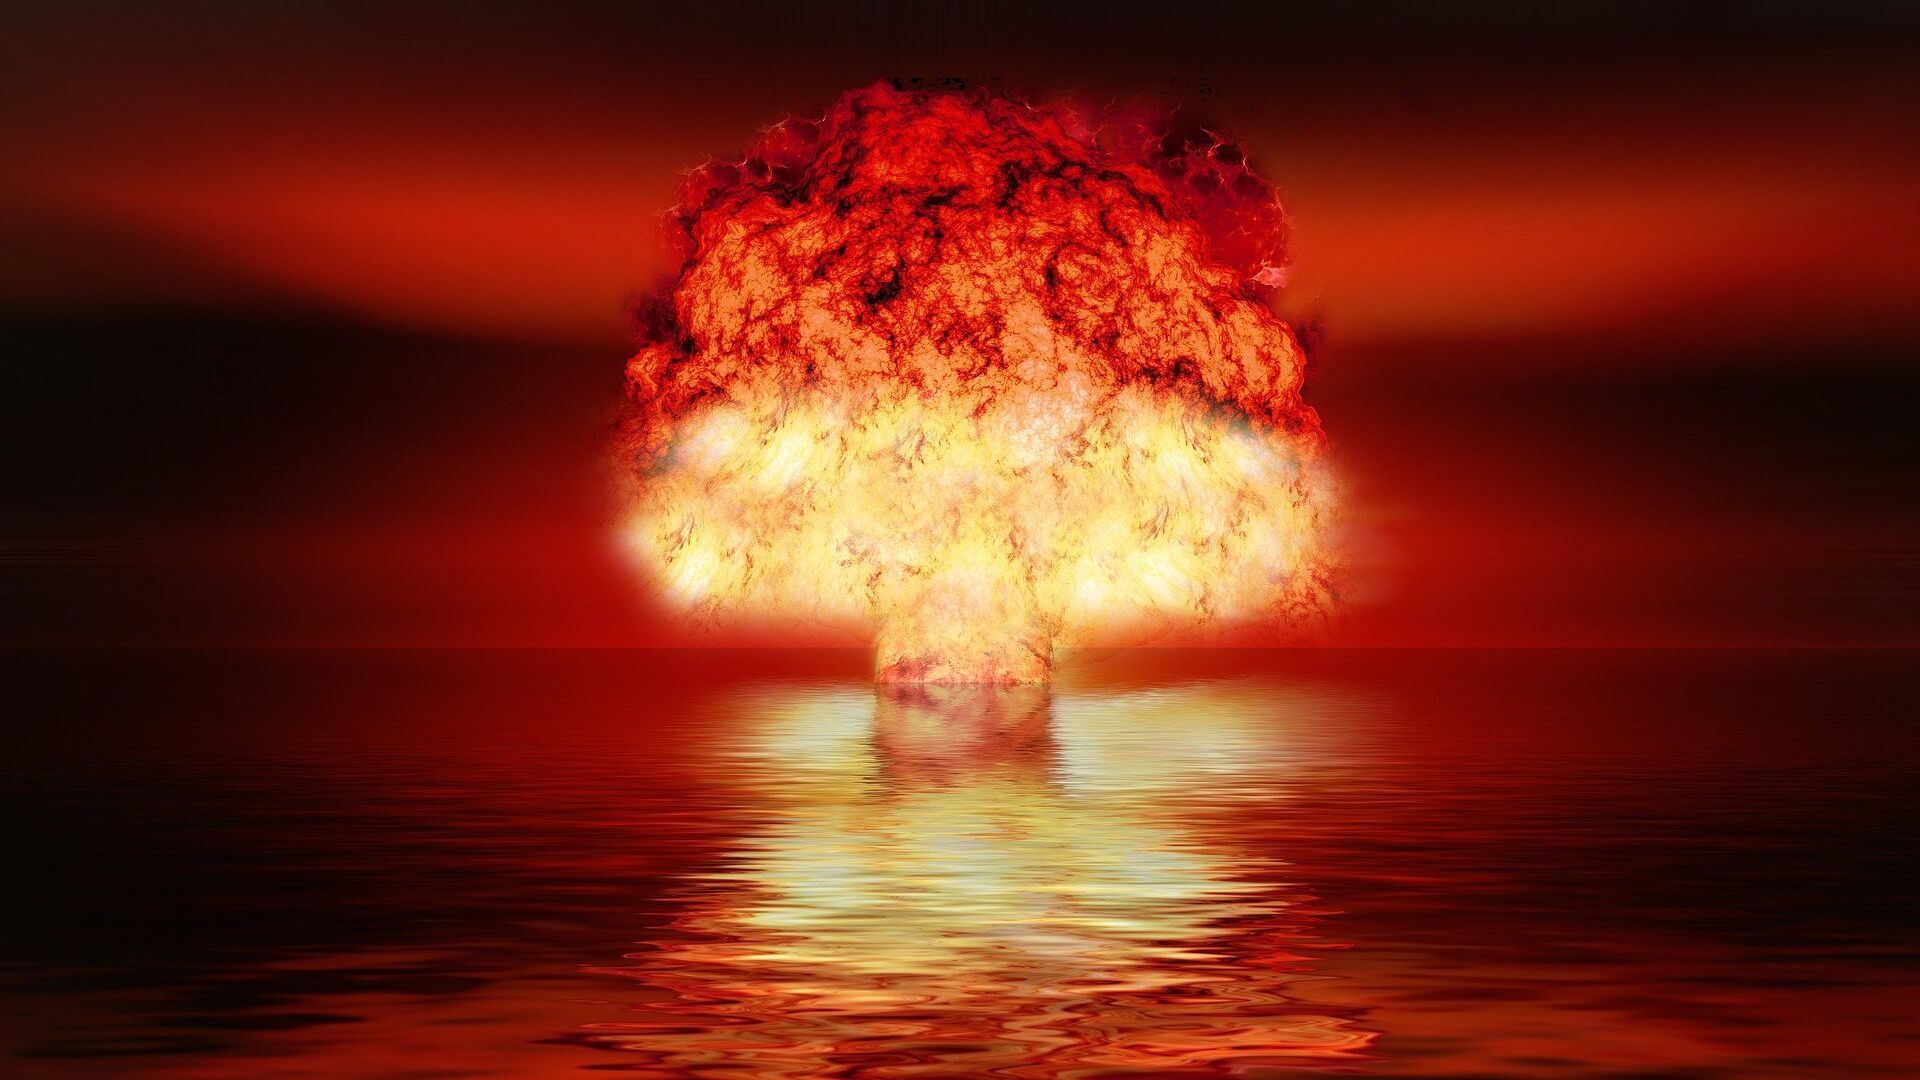 انفجار نووي - سبوتنيك عربي, 1920, 16.03.2021